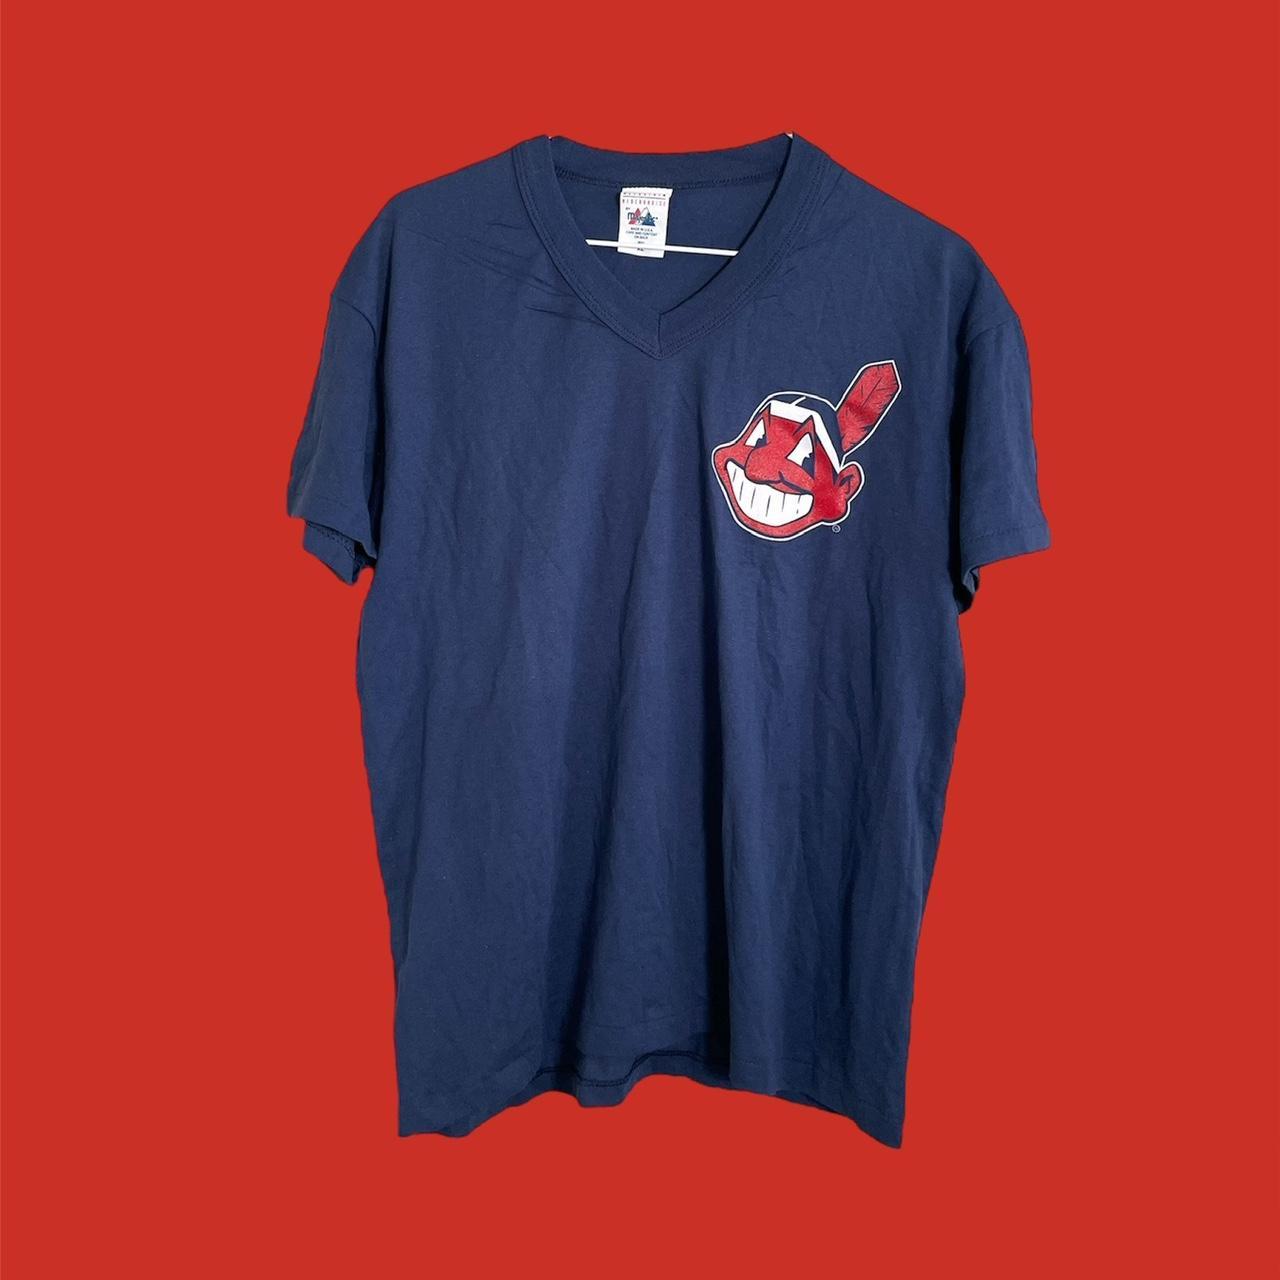 Vintage Cleveland Indians V Neck Style T Shirt Sz - Depop